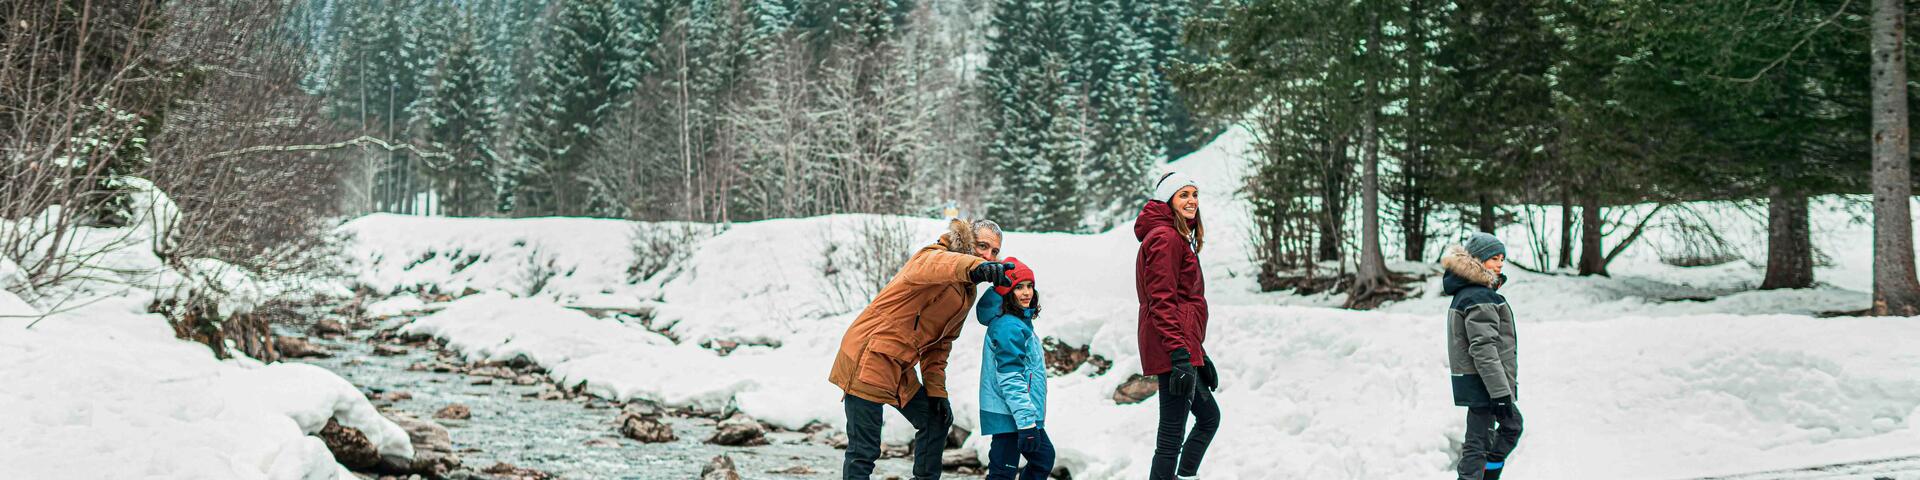 rodzina spacerująca zimą po lesie